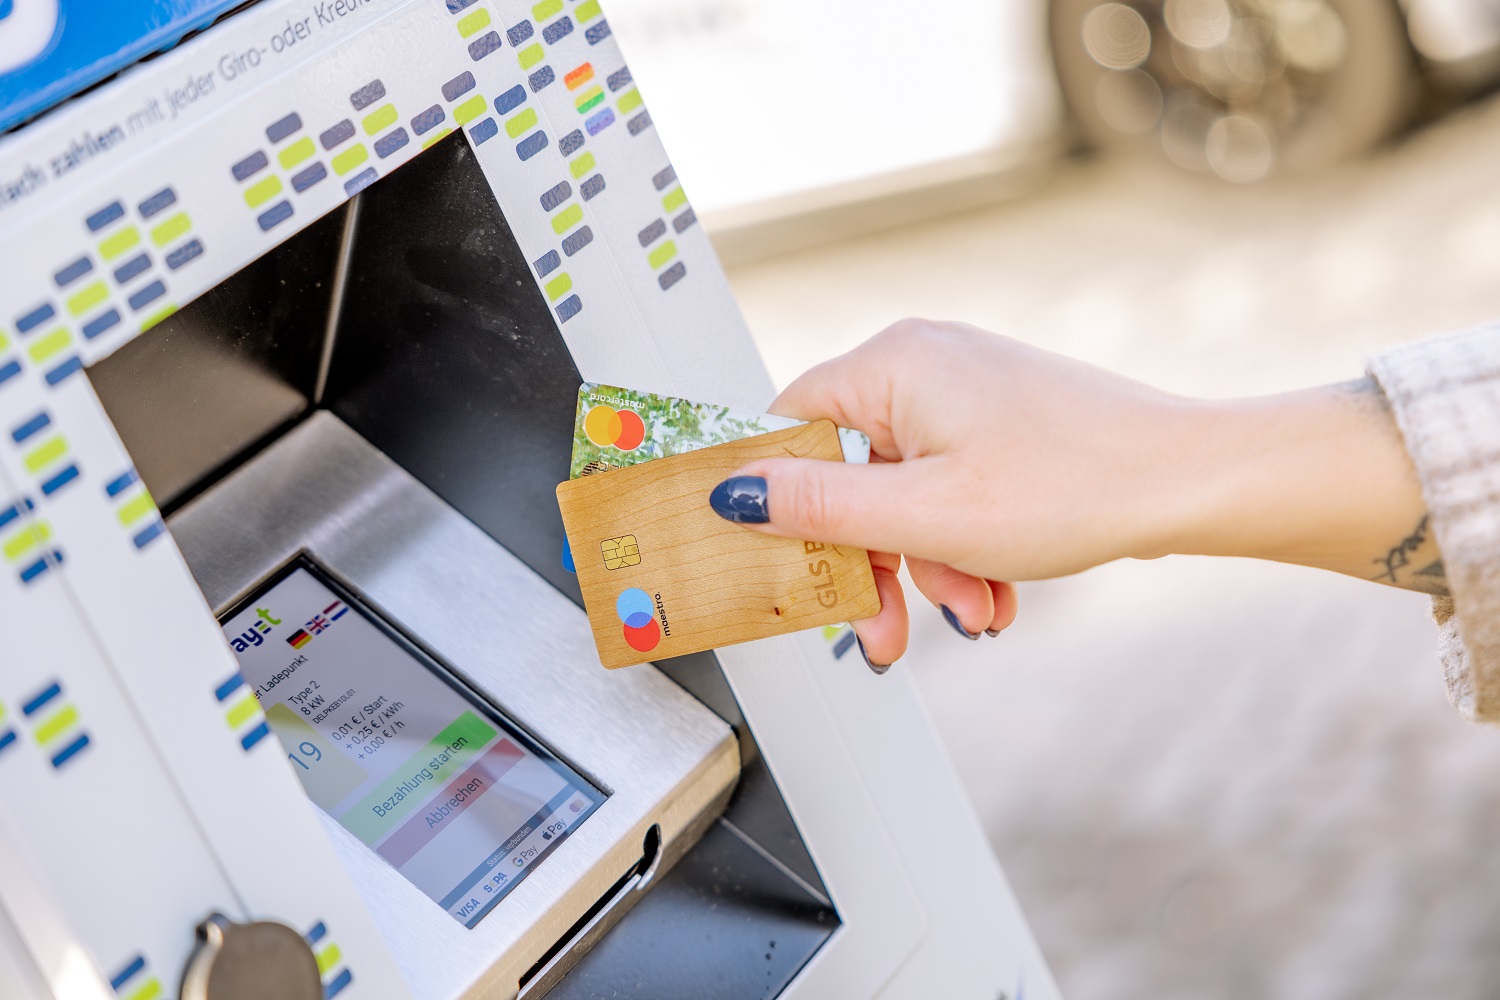 GLS Pay-t Bezahlterminal wird von einer Frau mit GLS EC-Karte benutzt